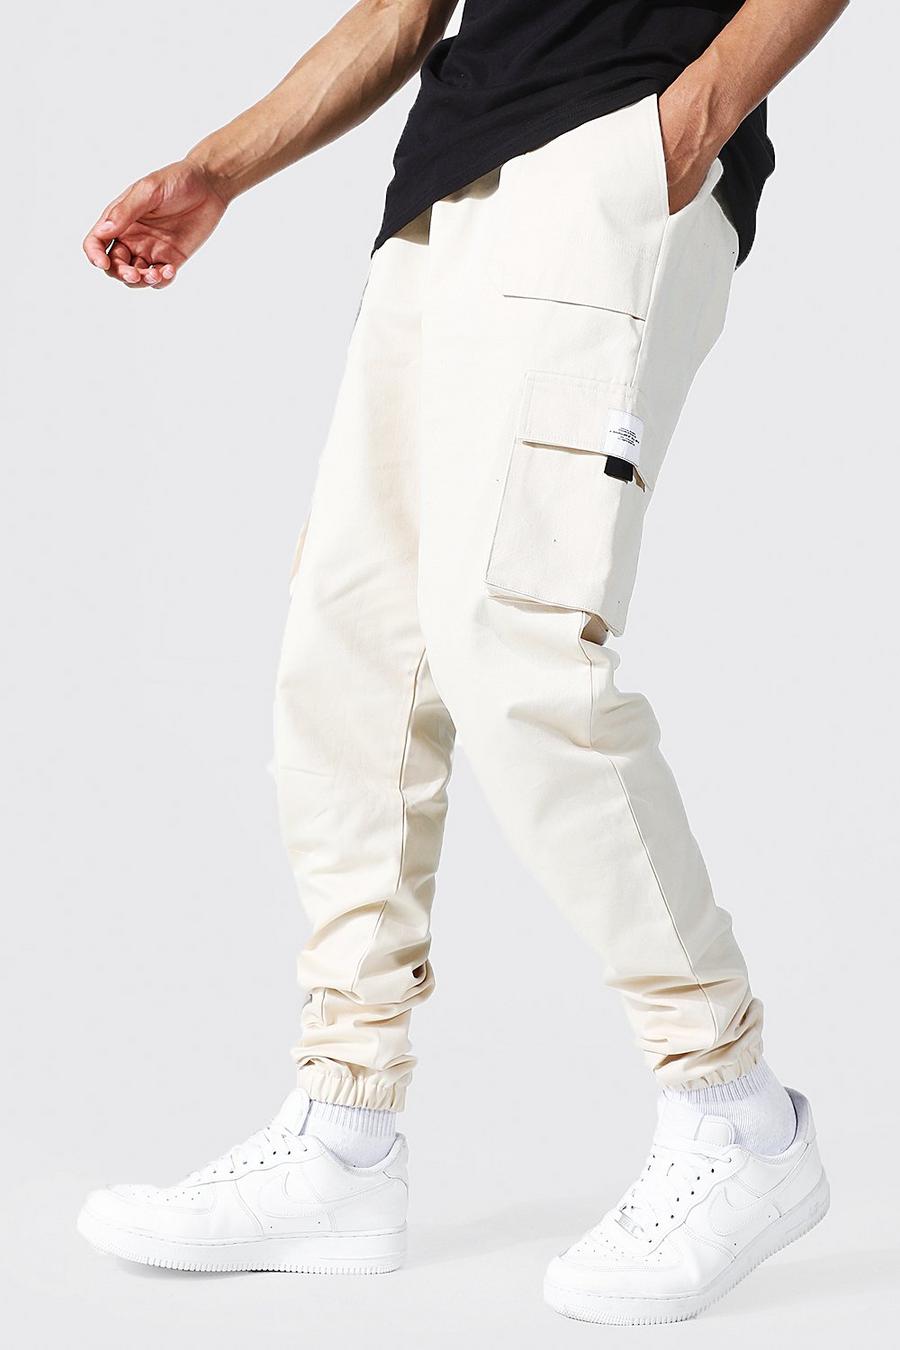 שמנת white מכנסי ריצה טוויל דגמ'ח עם חגורה בחזית ותווית לגברים גבוהים